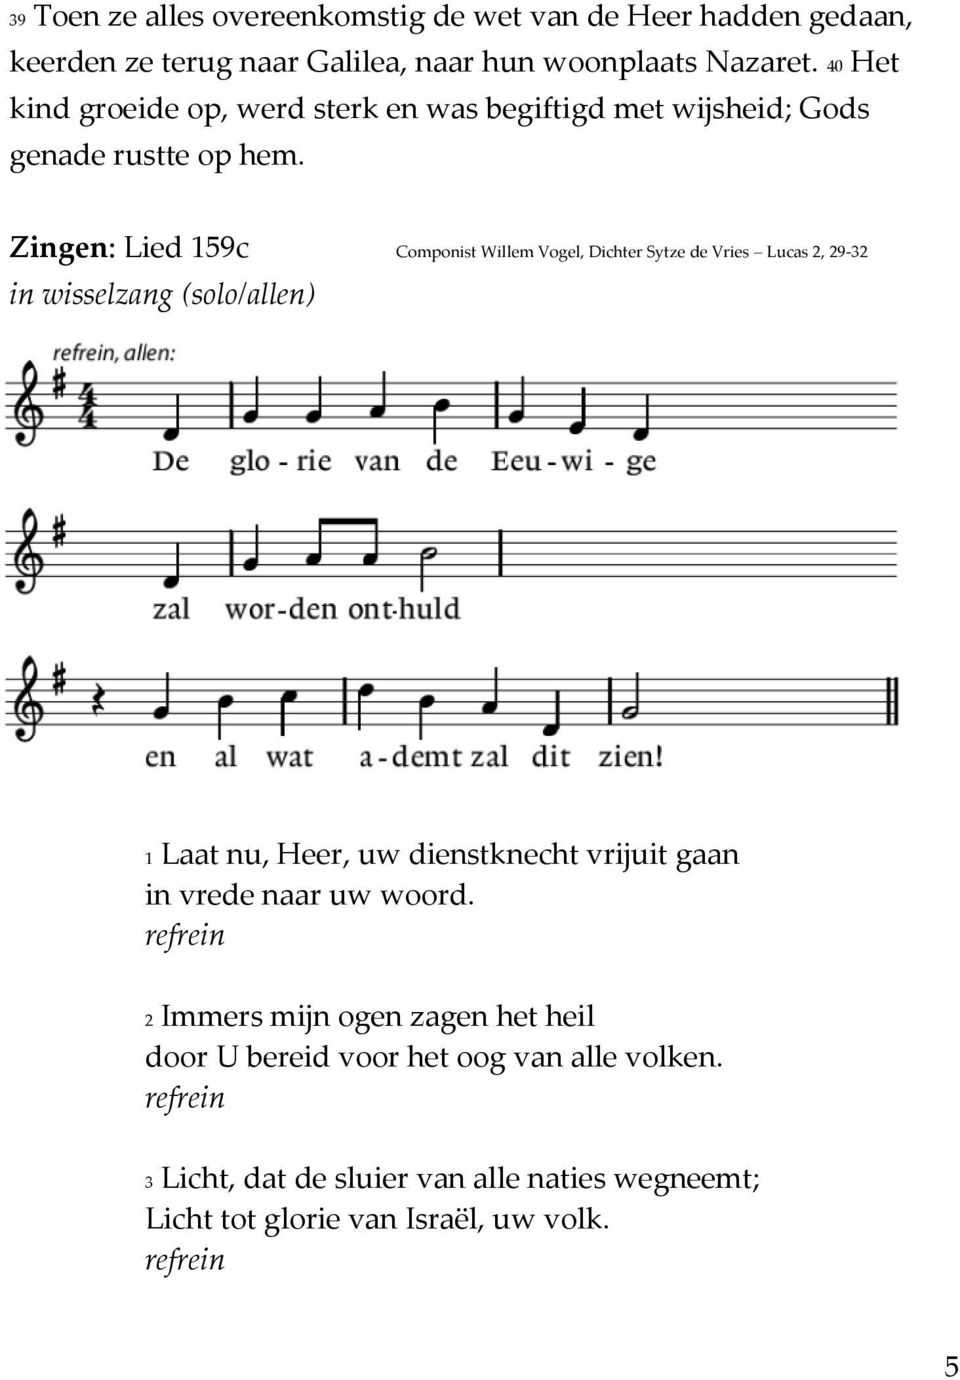 Zingen: Lied 159c Componist Willem Vogel, Dichter Sytze de Vries Lucas 2, 29-32 in wisselzang (solo/allen) 1 Laat nu, Heer, uw dienstknecht